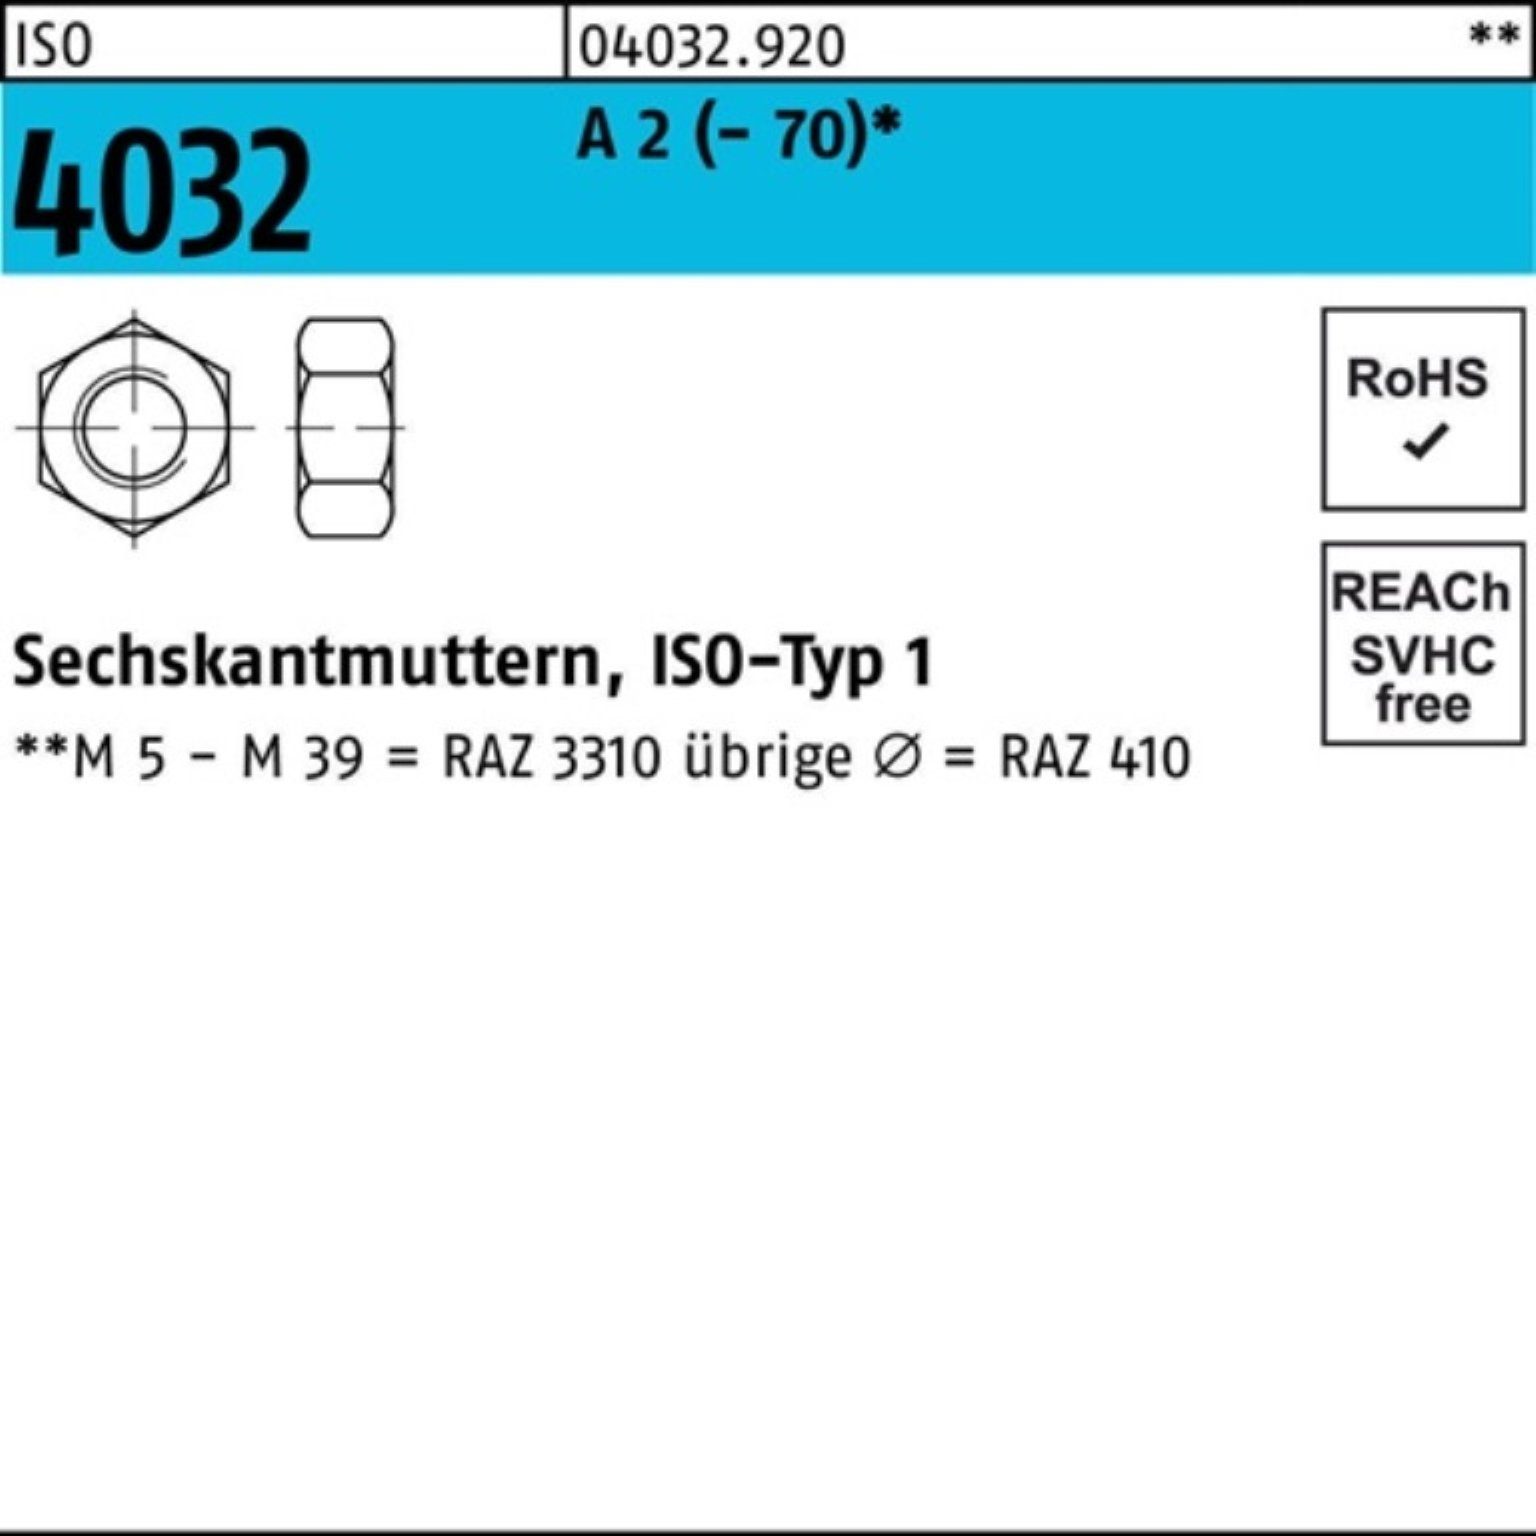 Bufab Muttern 100er Pack Sechskantmutter ISO 4032 M16 A 2 (70) 50 Stück ISO 4032 | Muttern